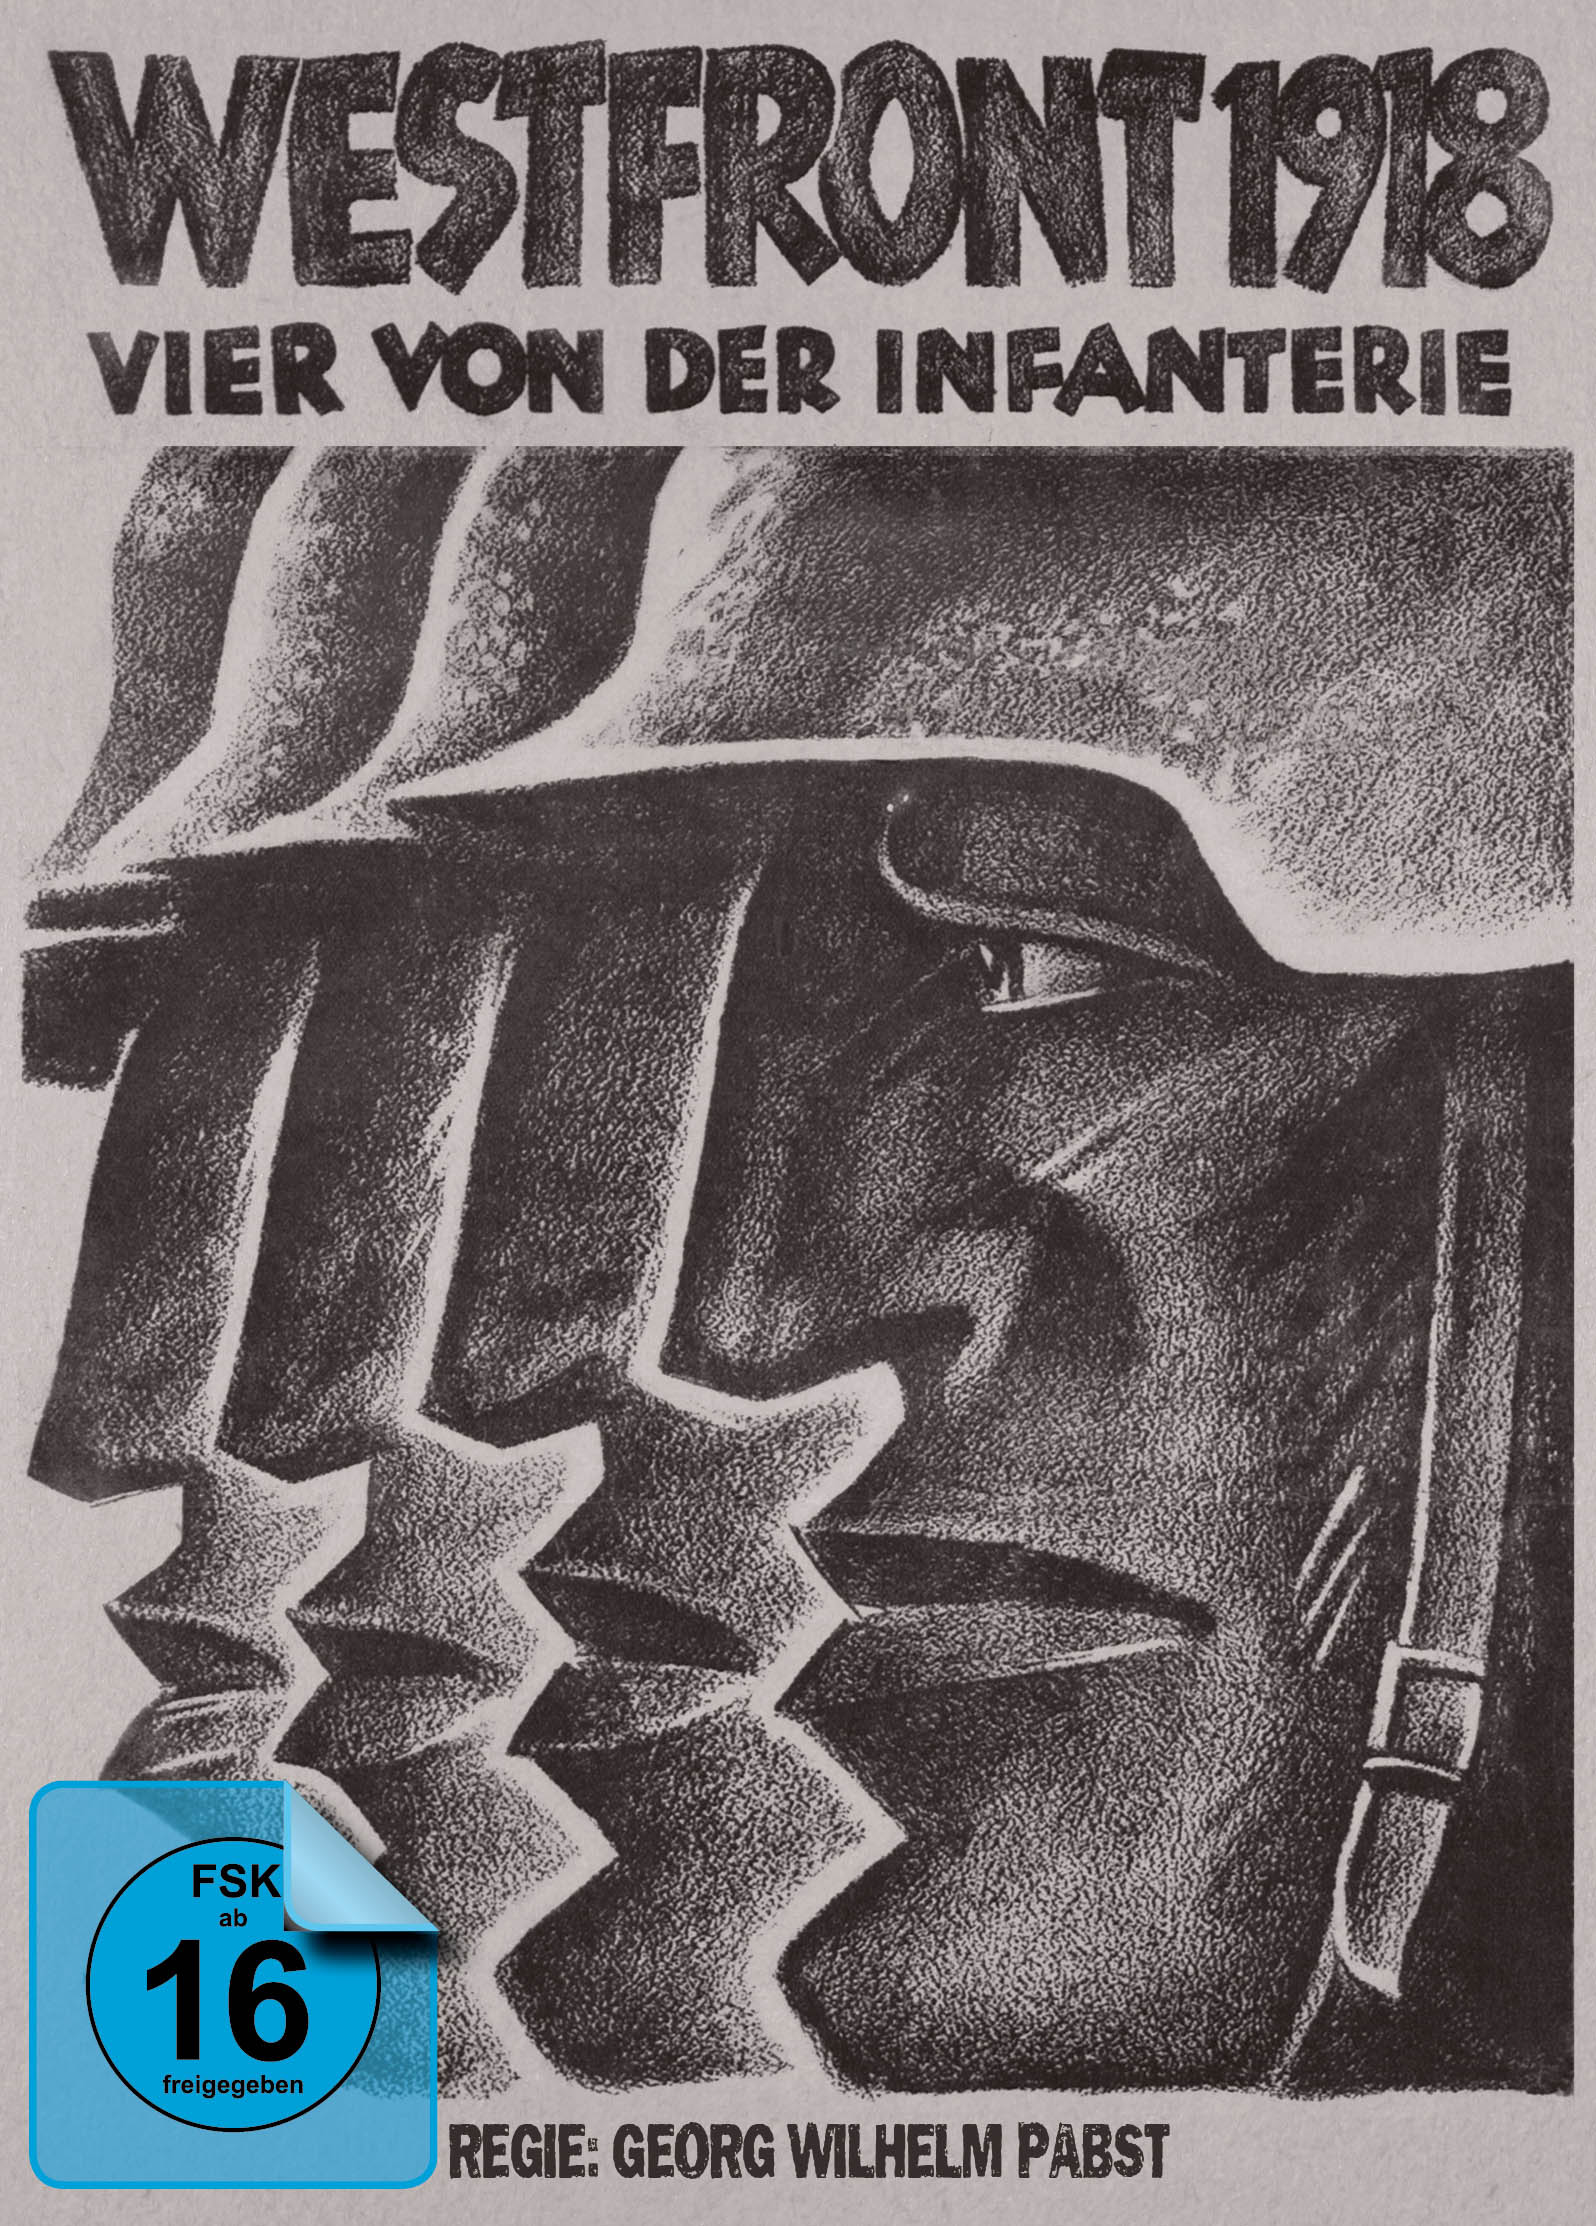 Westfront 1918: Vier Infanterie Blu-ray von der